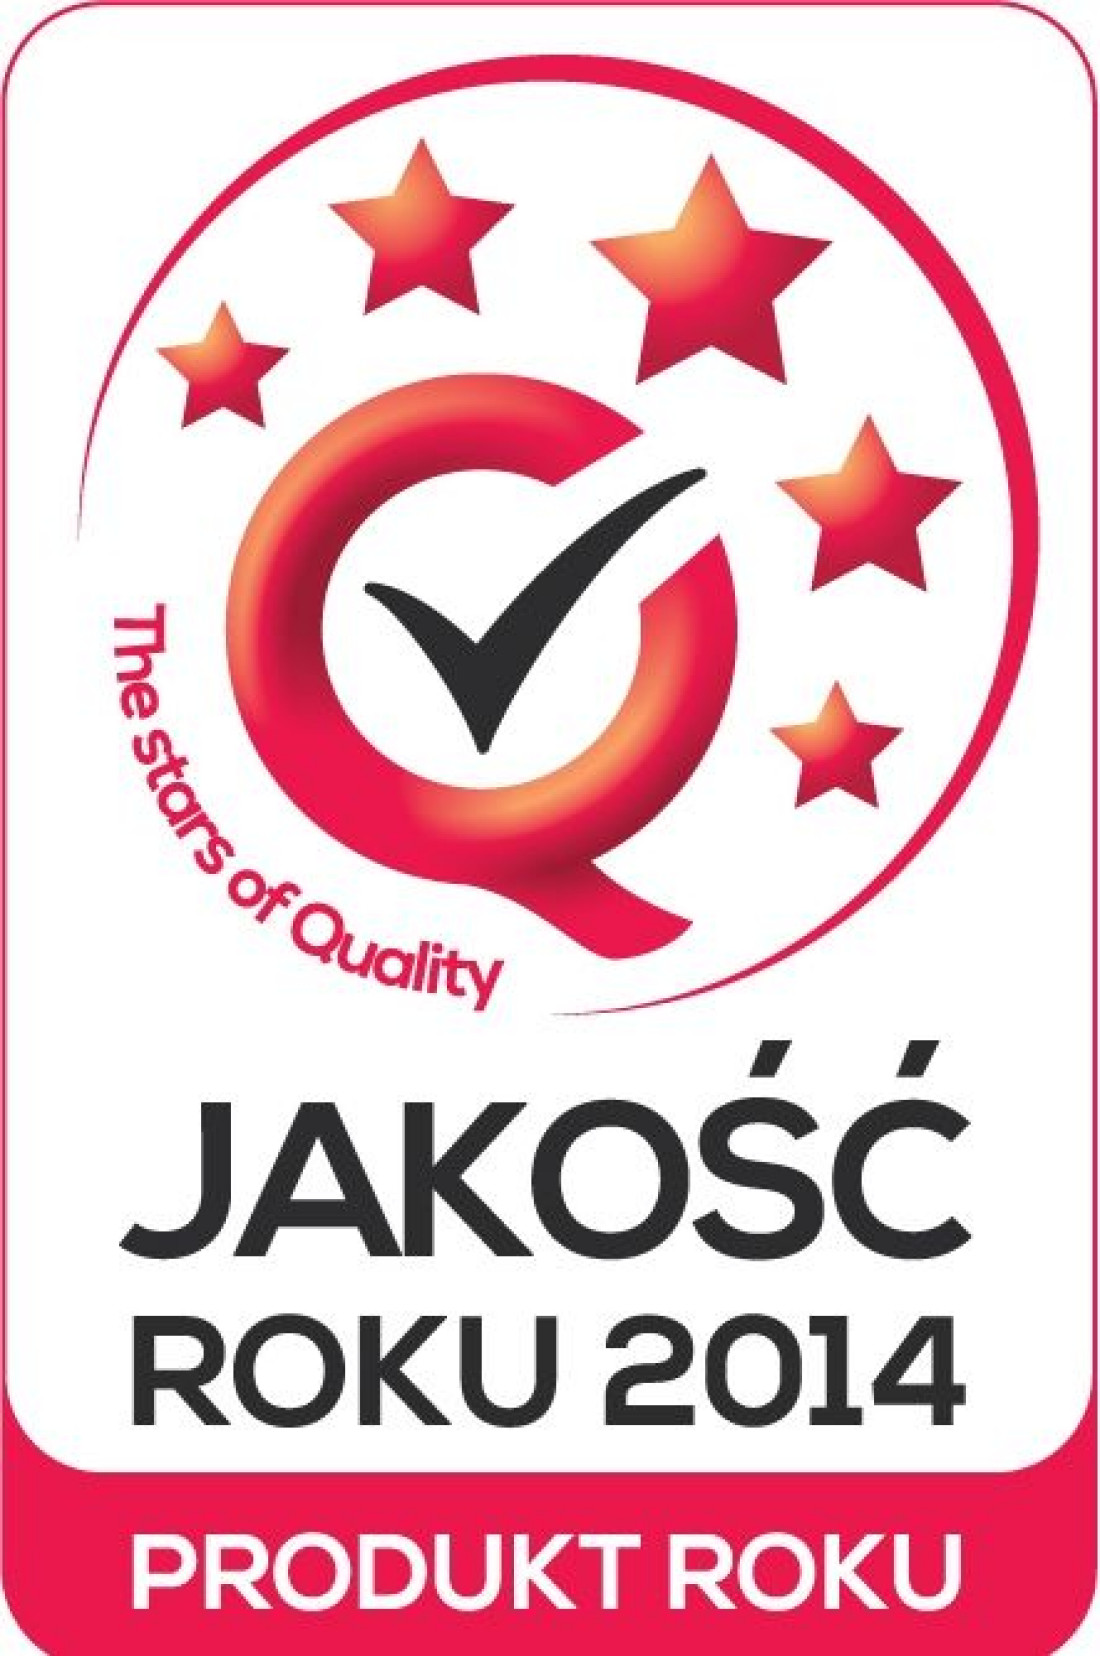 Firma JONIEC uhonorowana godłem JAKOŚĆ ROKU 2014